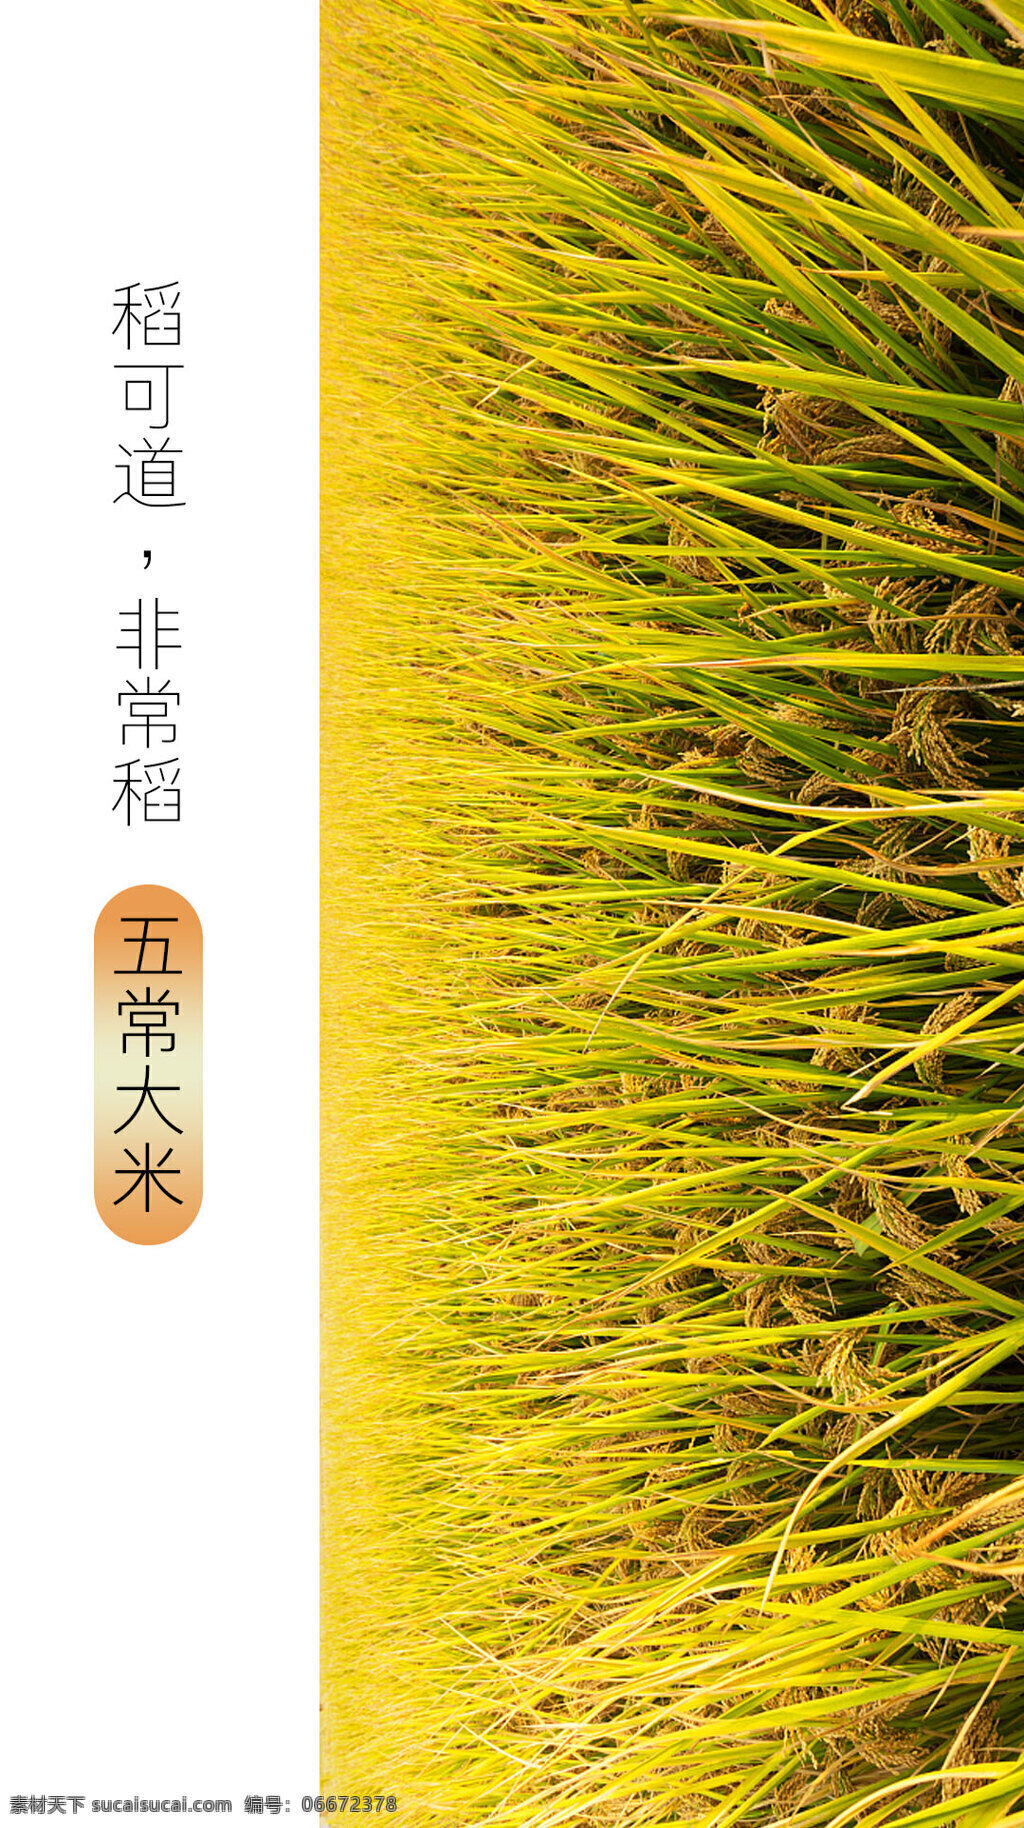 稻米海报 五常大米 稻子 稻米 文字排版 创意海报 简约